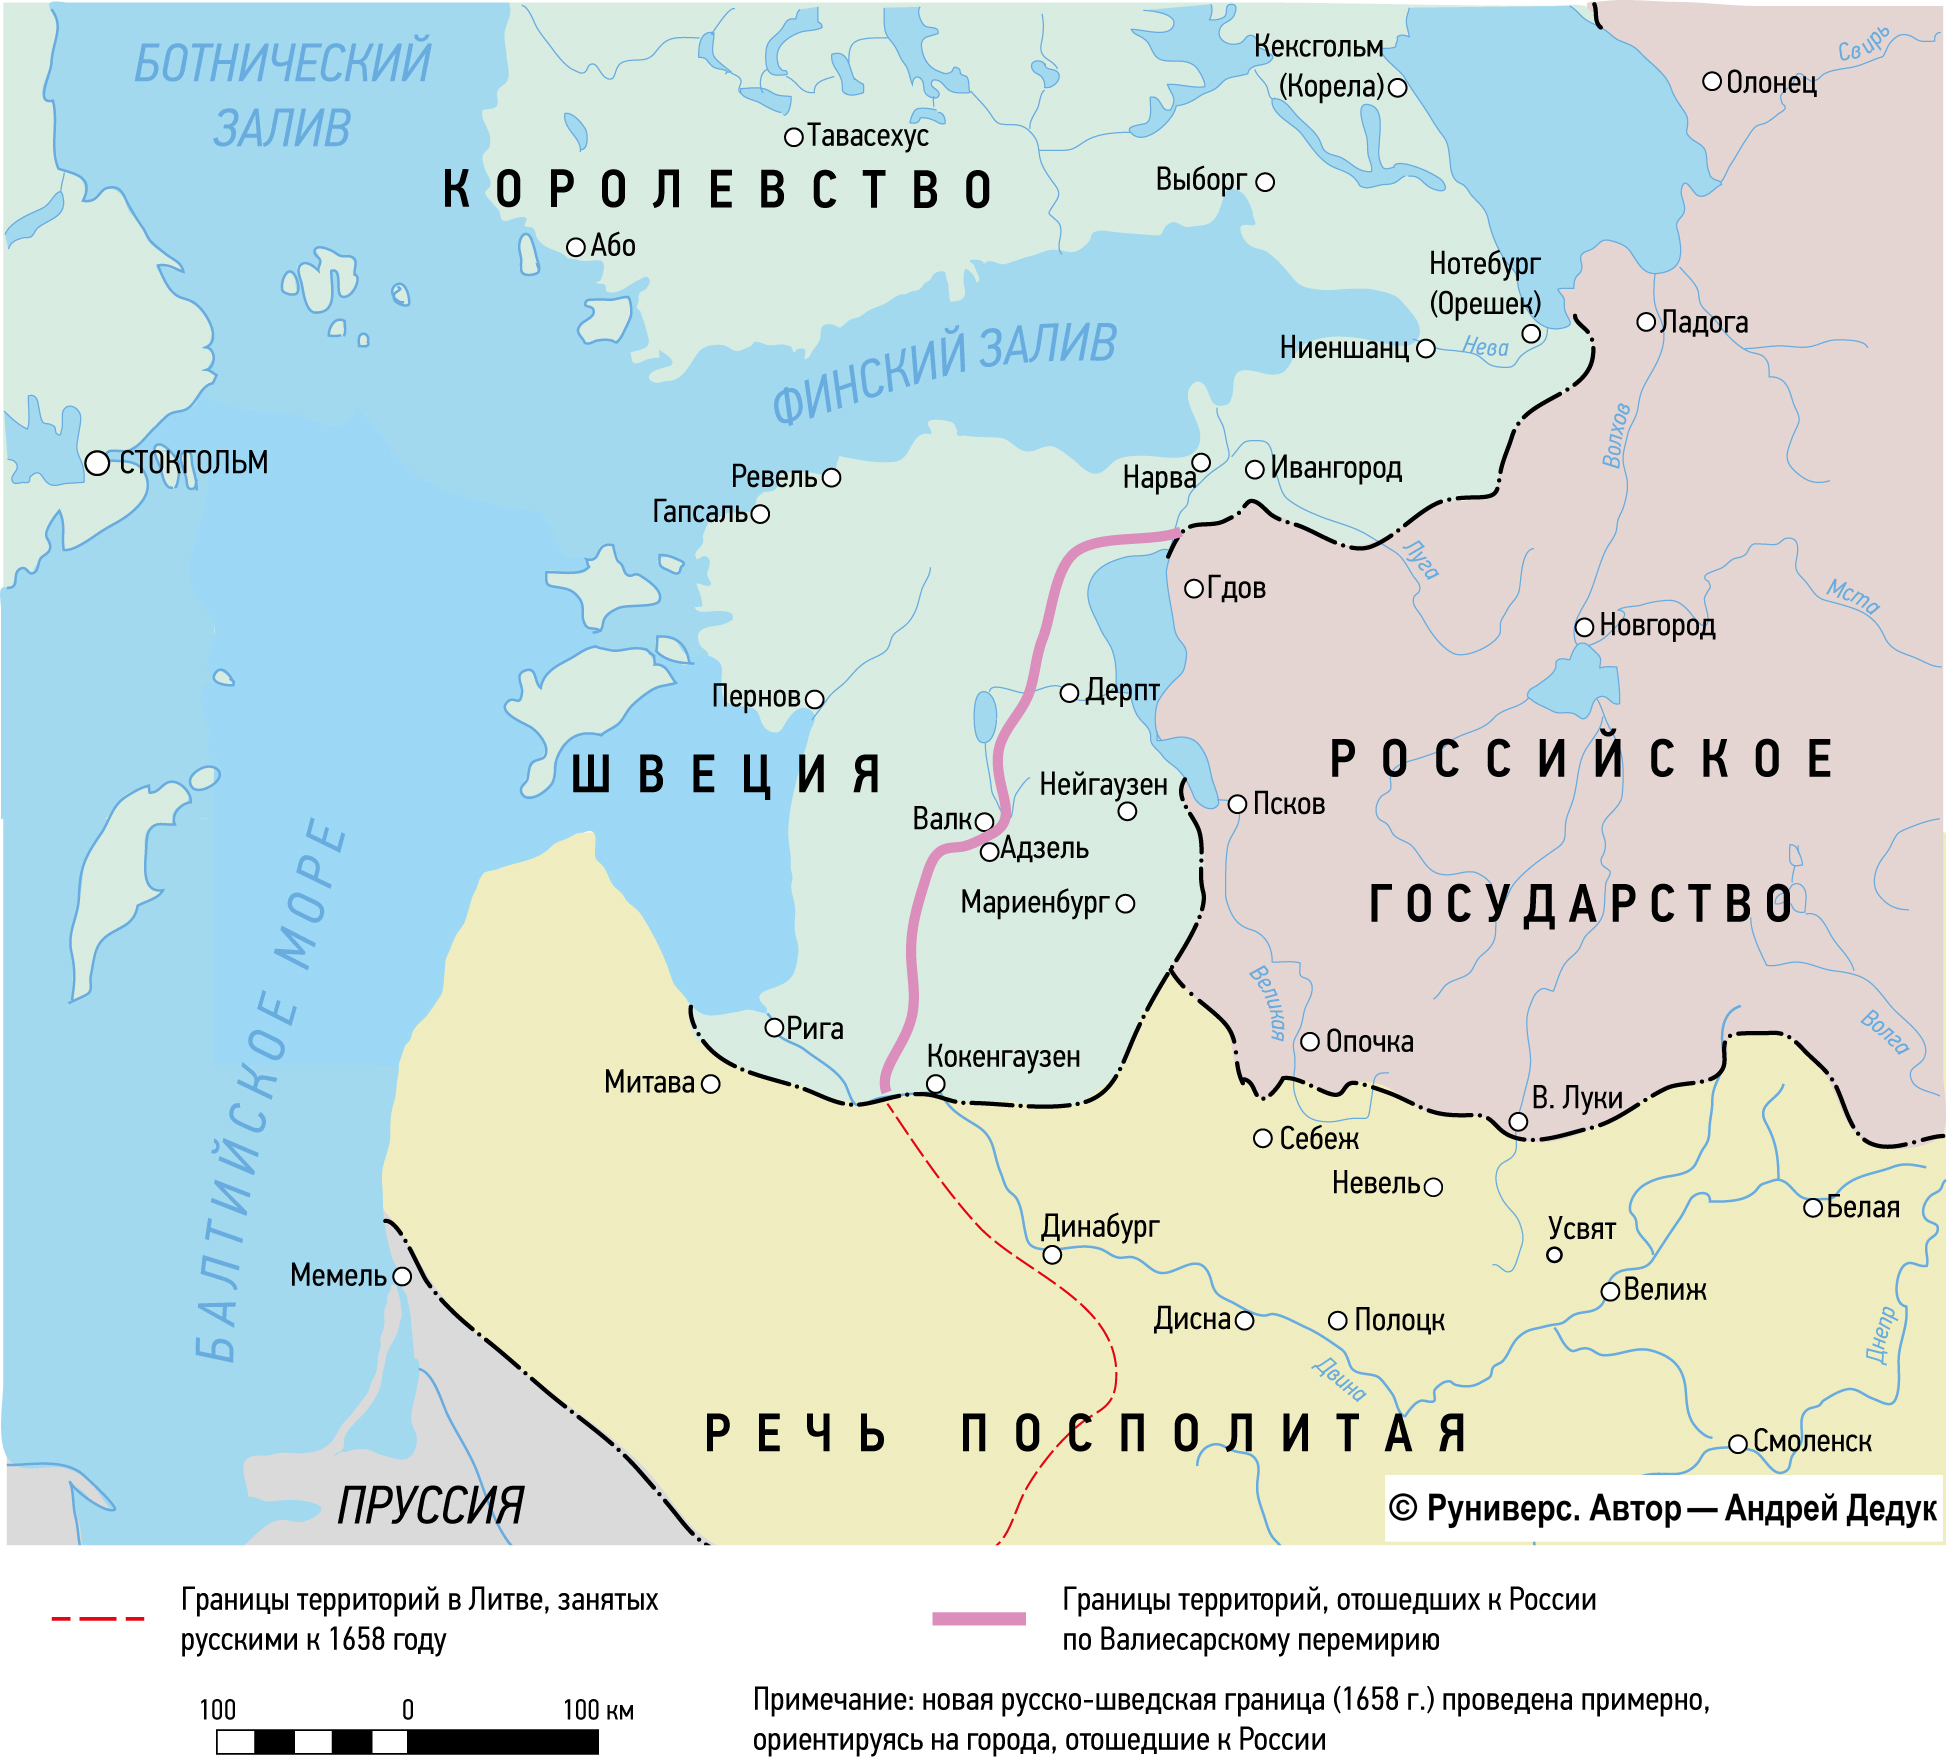 Русско-шведская война 1656-58 Итоги